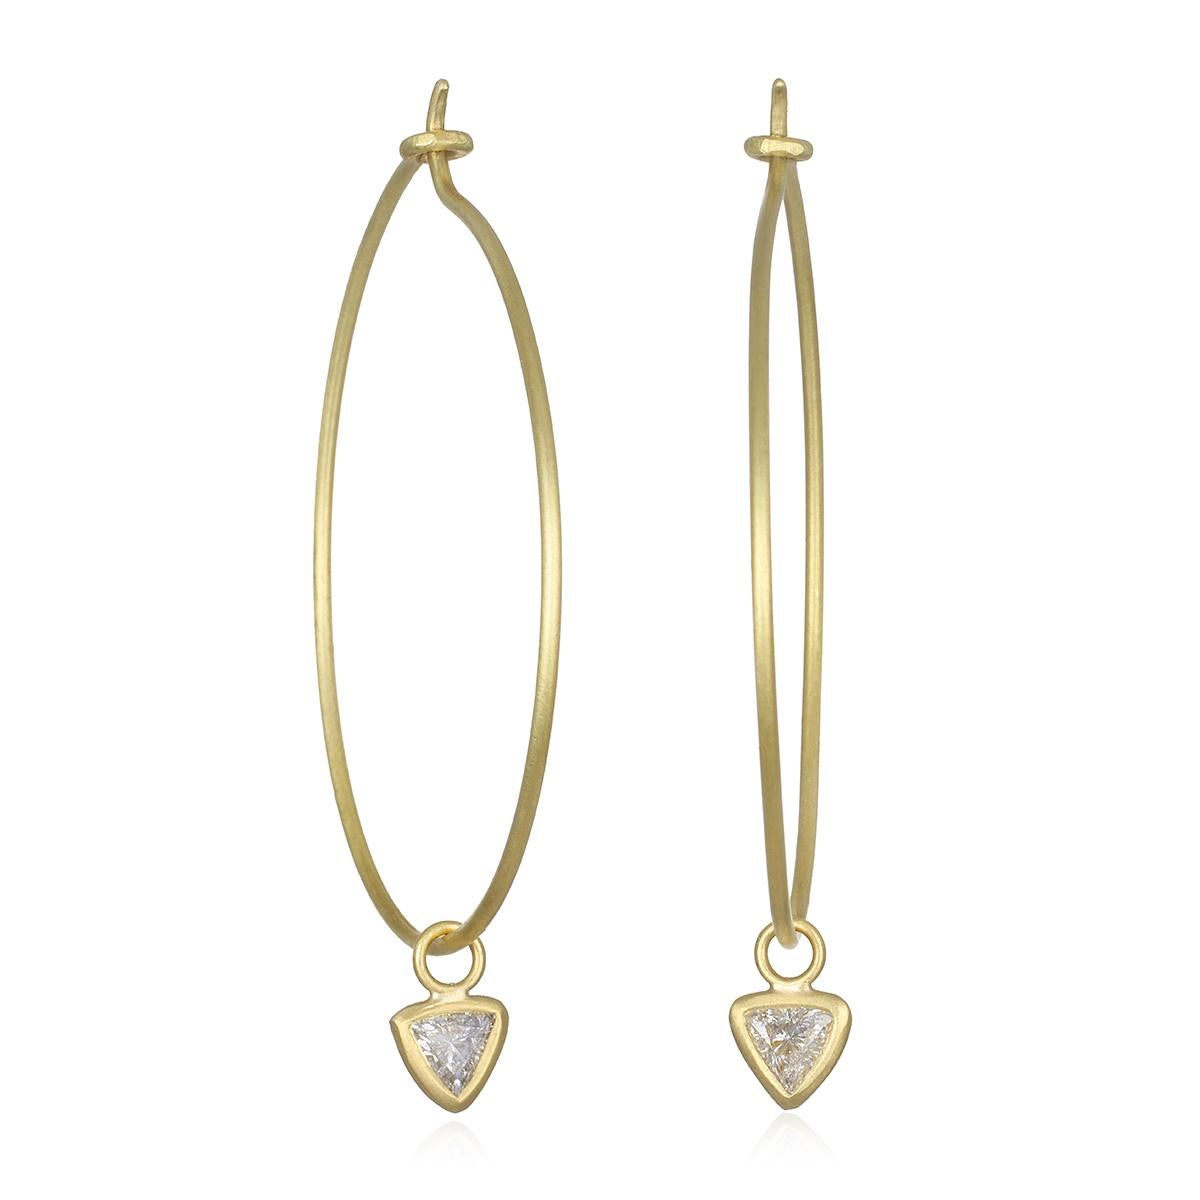 Trillion Cut Faye Kim 18 Karat Gold Hoop Earrings with Trillion Diamond Drops For Sale